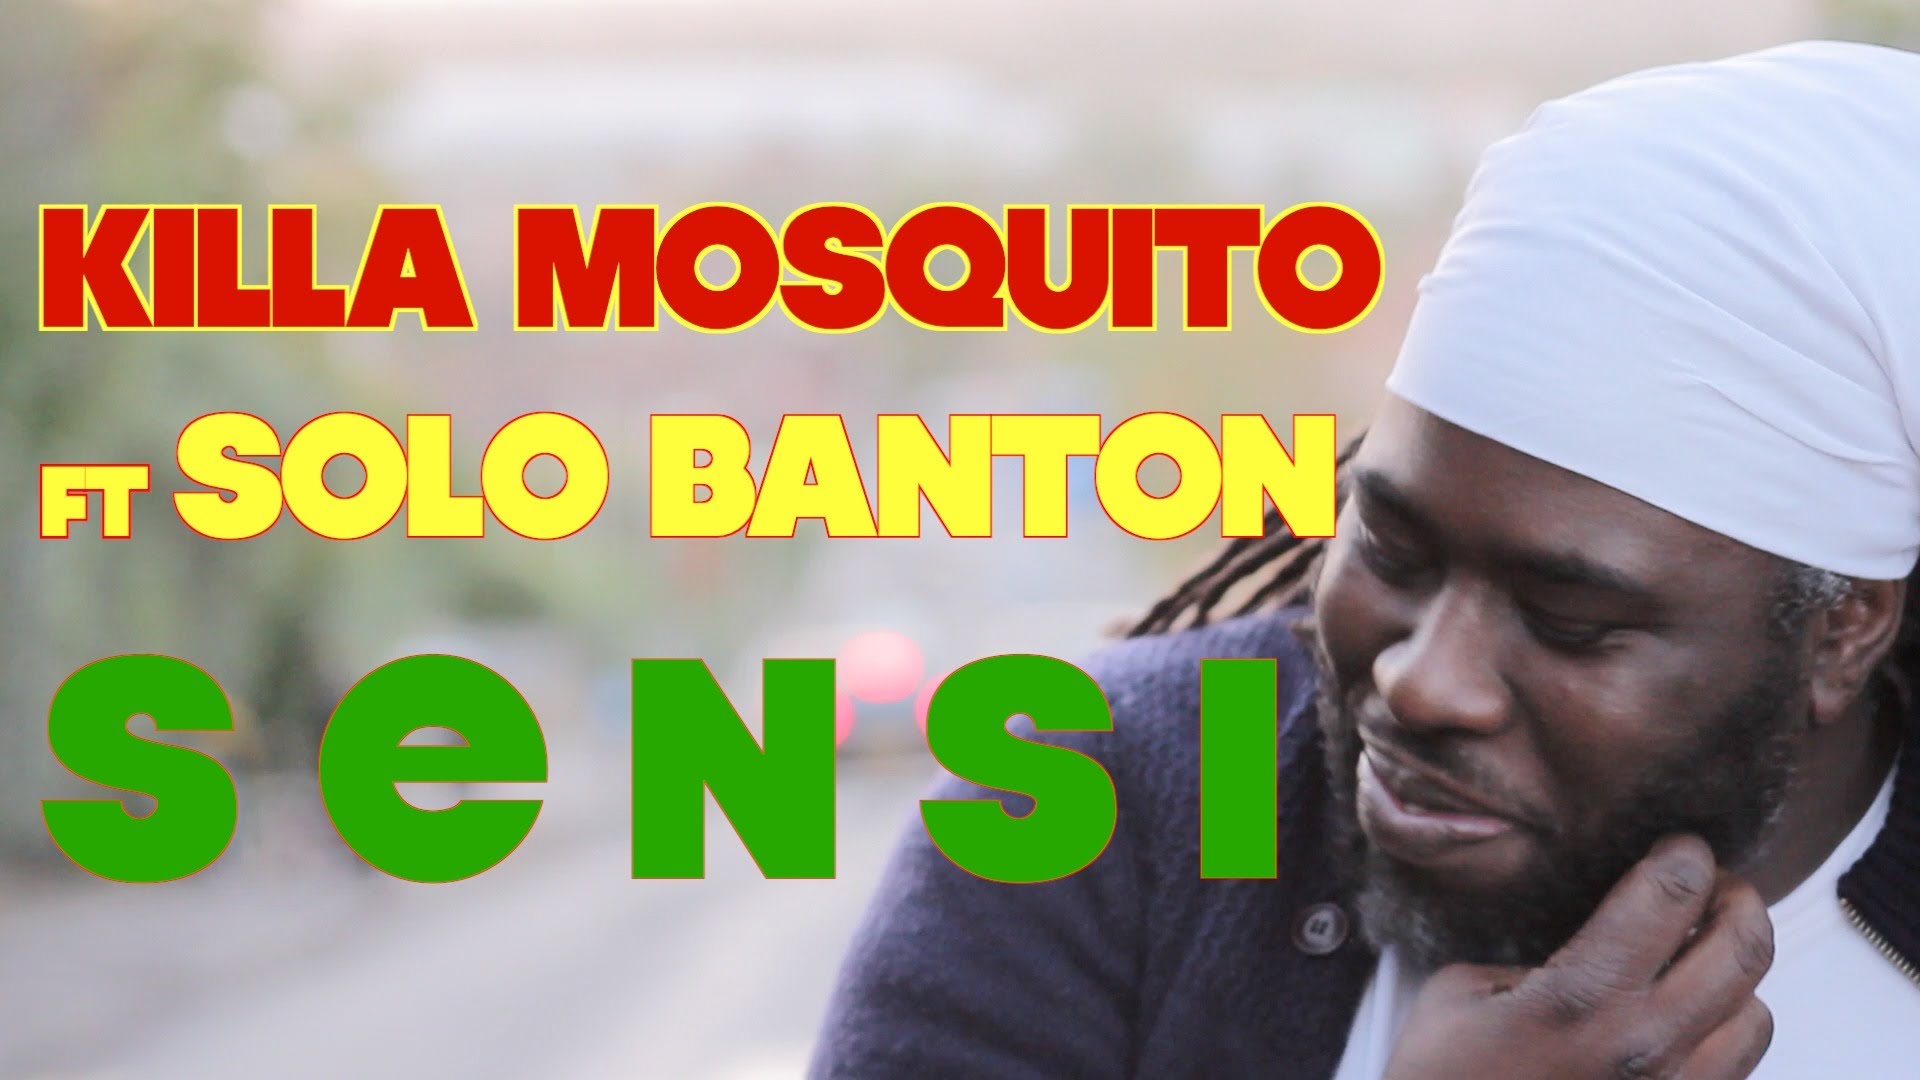 Killa Mosquito feat. Solo Banton - Sensi [11/26/2013]